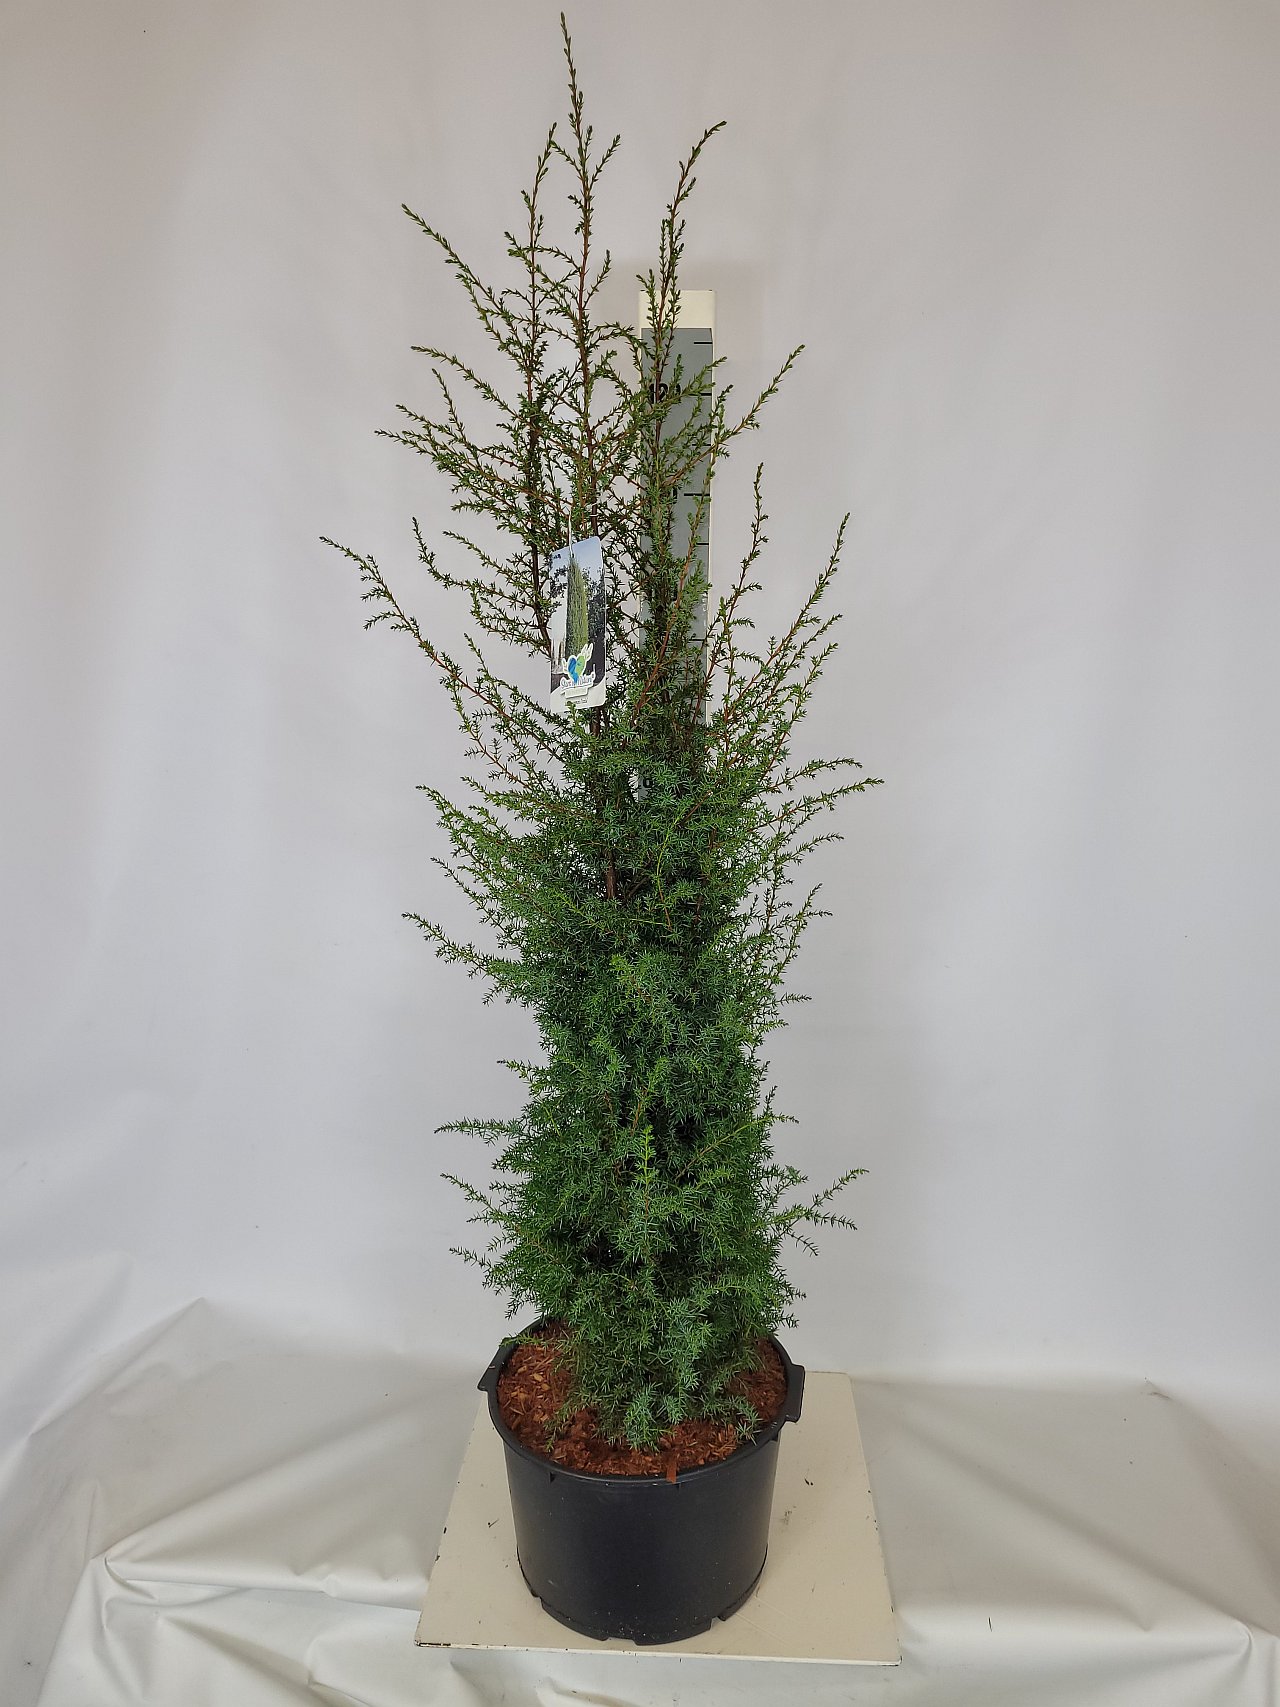 Juniperus com.'Excelsa' C 12 80-100, 400 Stück lieferbar, Beladung 2x8, Highlight: schöner aufrechter Wacholder